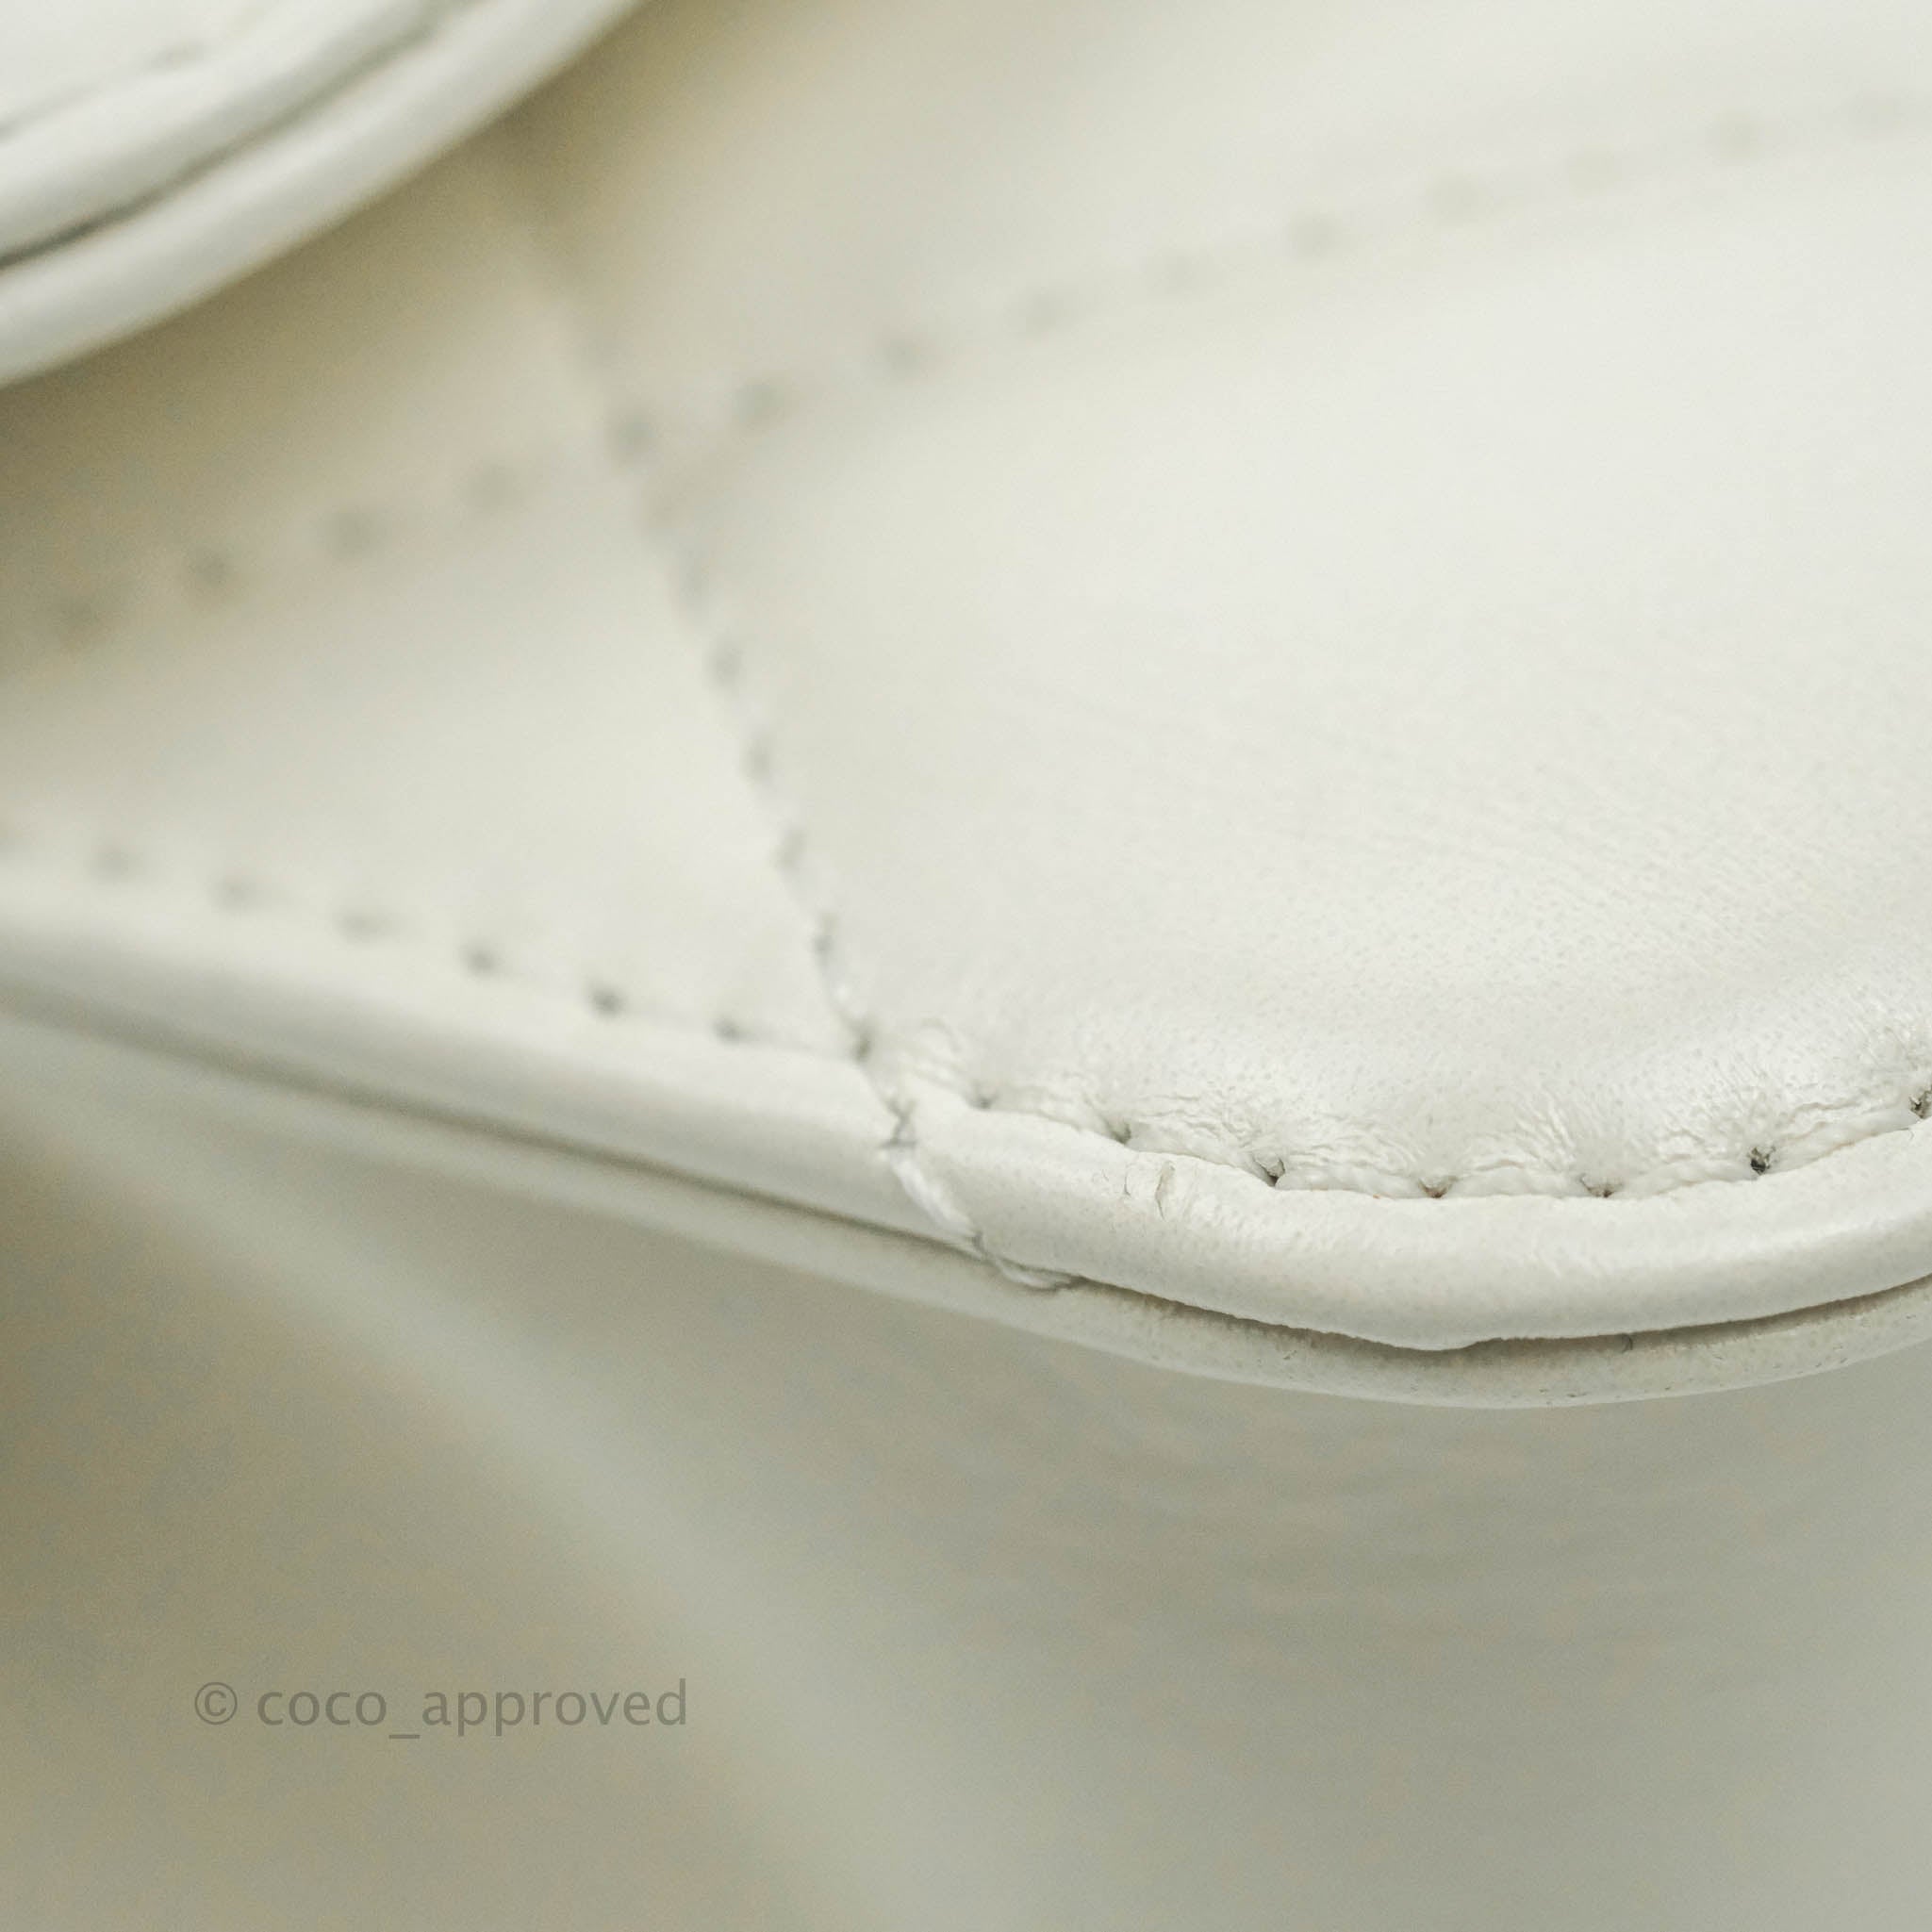 Mini flap bag, Calfskin & gold-tone metal, white — Fashion | CHANEL